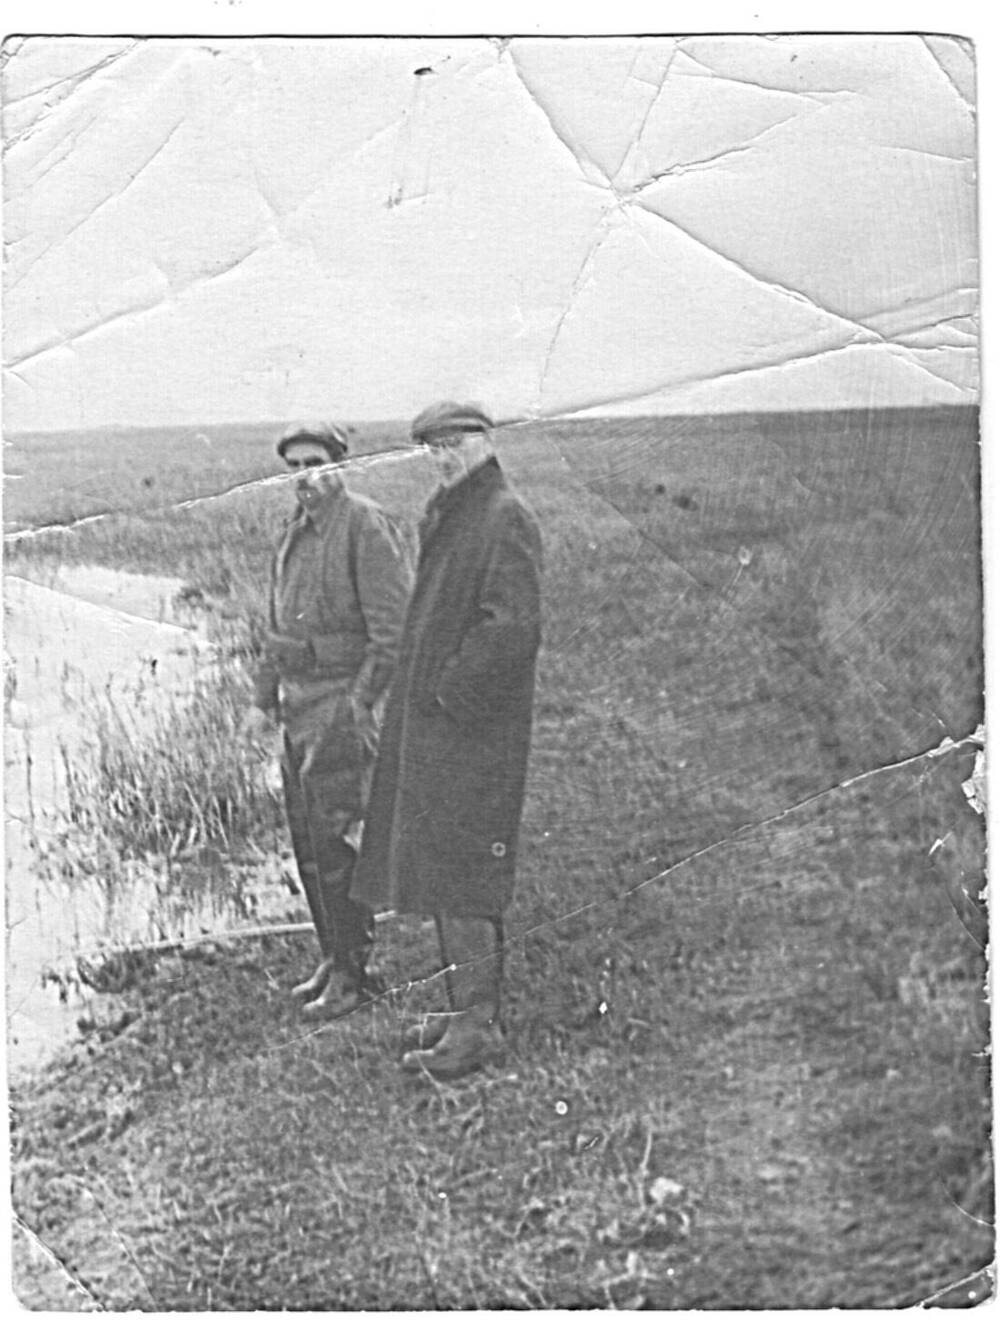 Фотография черно-белая. Кудинов Петр Николаевич (справа) в плаще и Карташев Алексей Михайлович (слева).